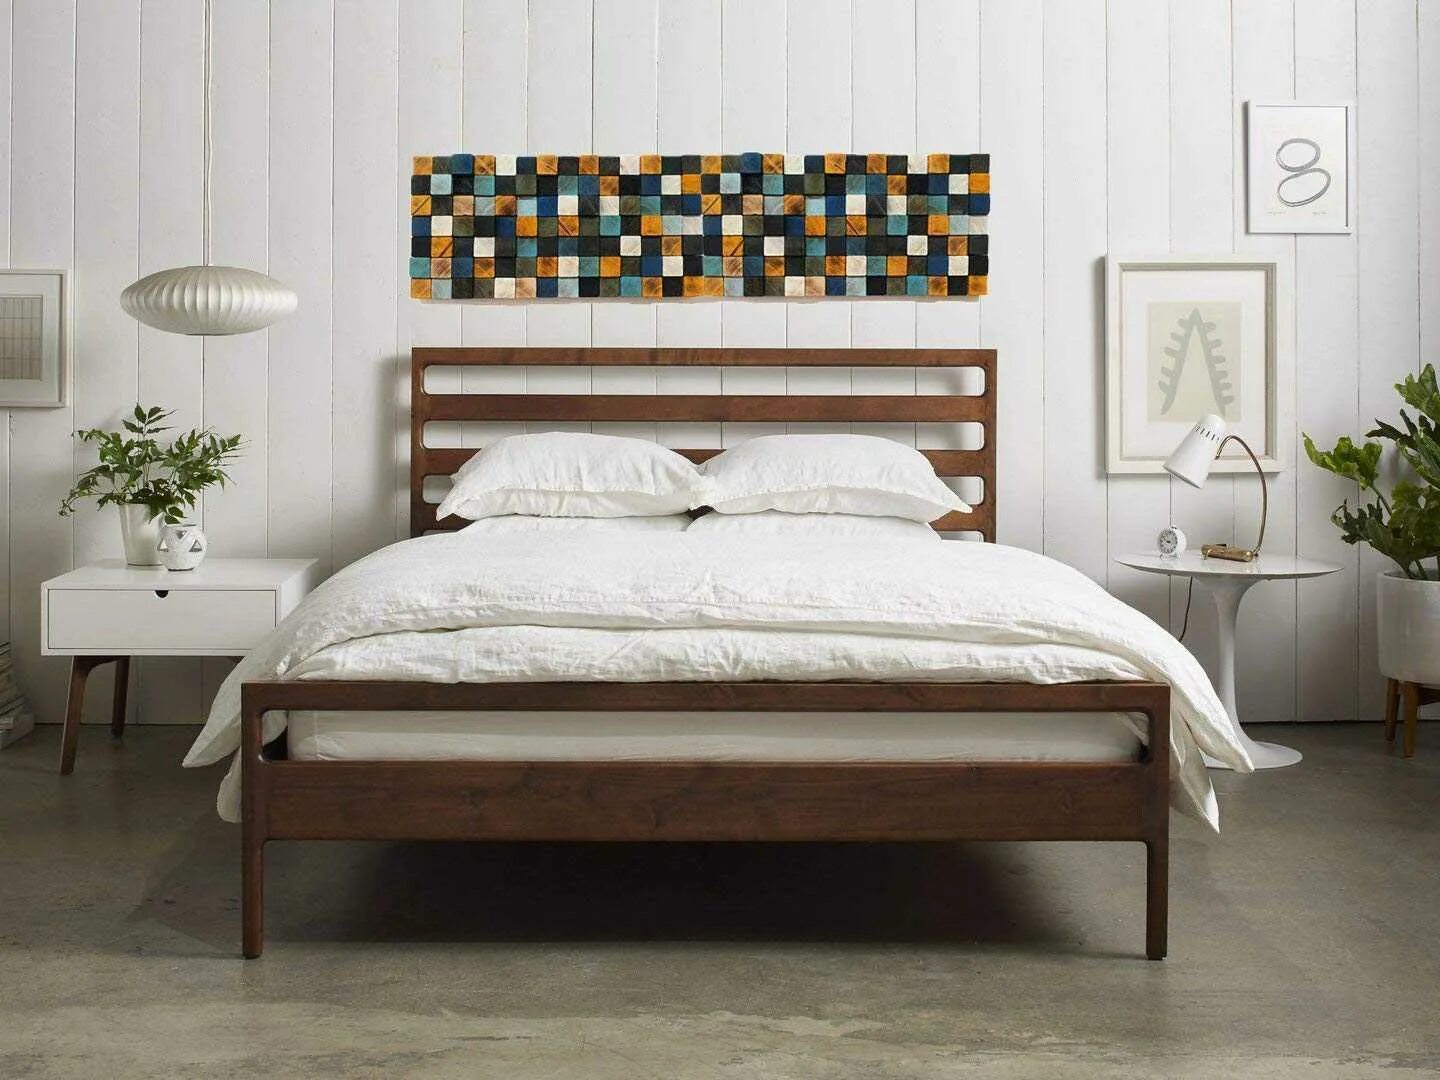 Изголовье кровати из дерева. Декор в спальню на стену у изголовья кровати. Деревянное изголовье над кроватью. Изголовье кровати в виде дерева. Дизайнерская кровать с деревянным изголовьем.